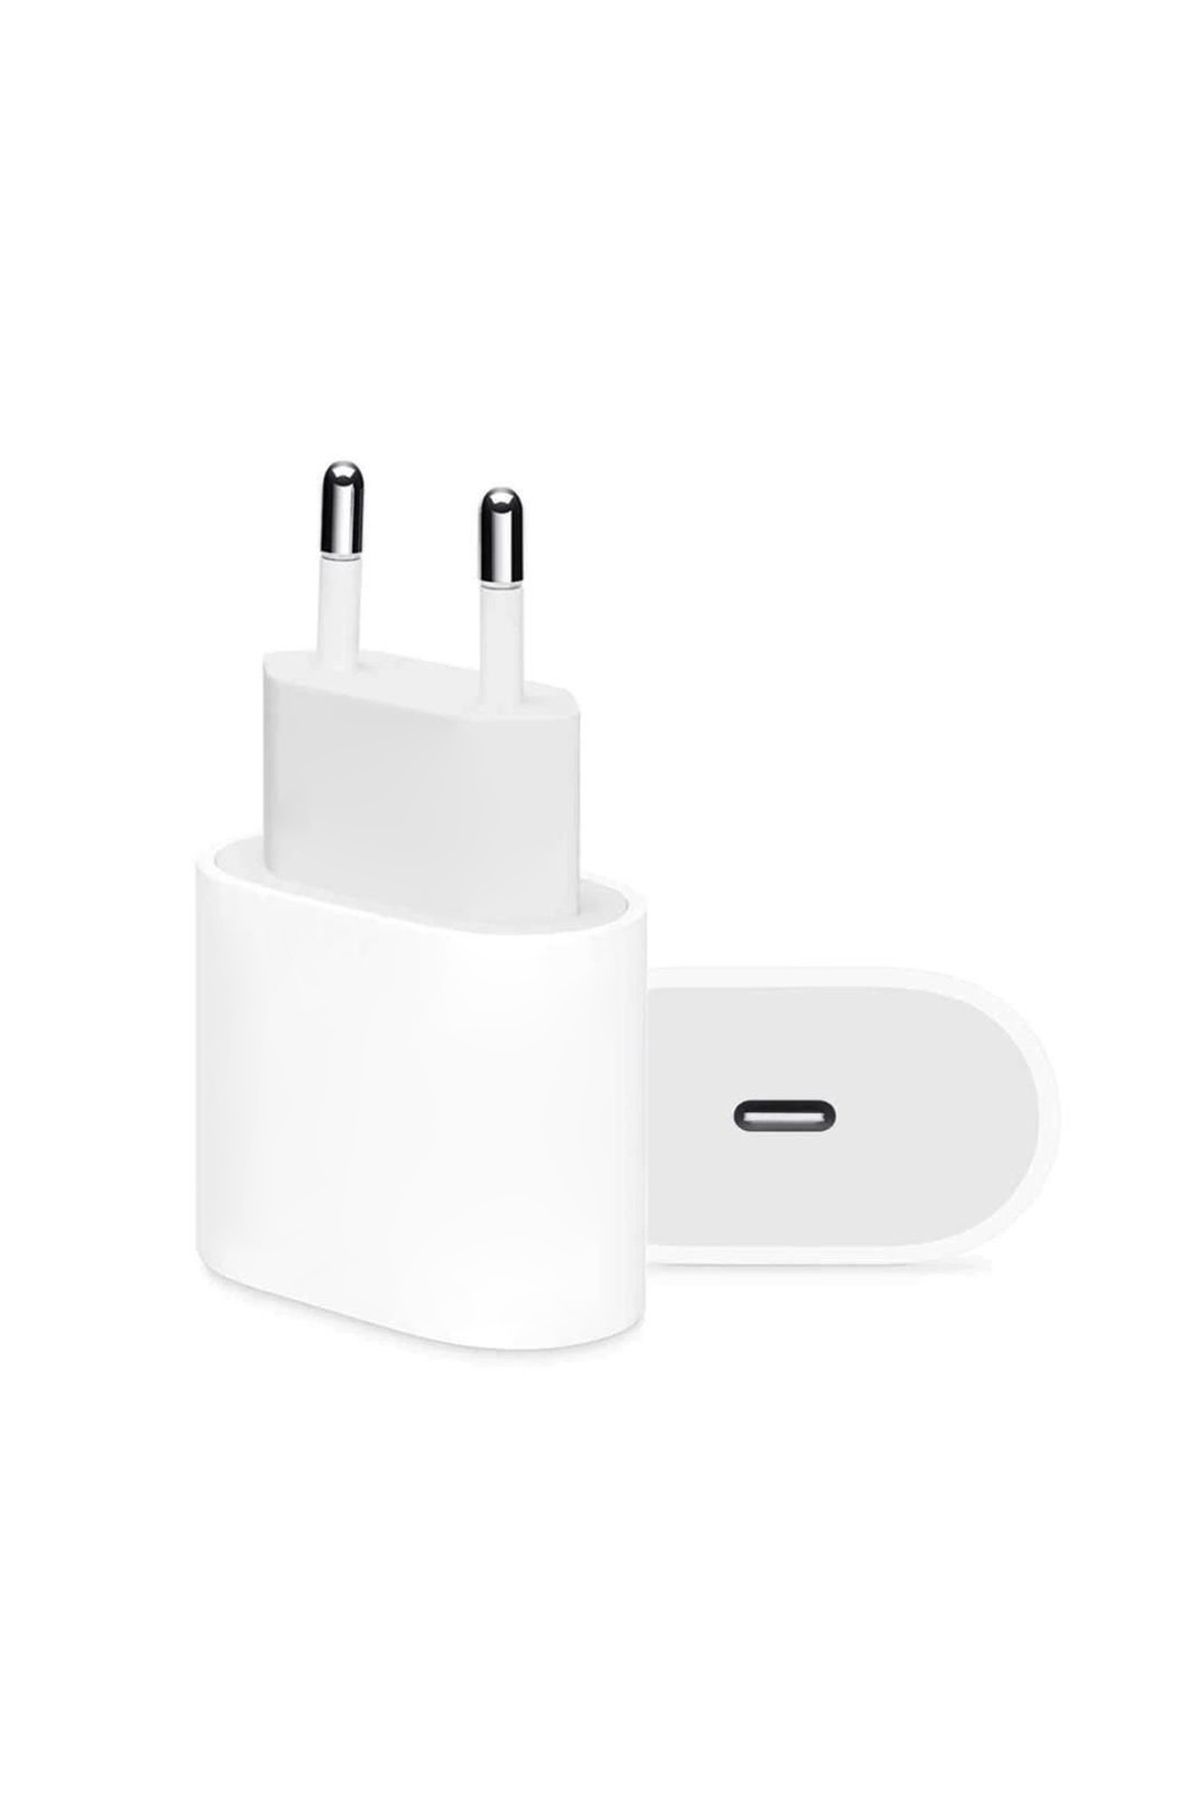 Microsonic Apple iPhone 14 Pro Max USB-C Güç Adaptörü, Type-C Priz Şarj Cihazı Adaptörü